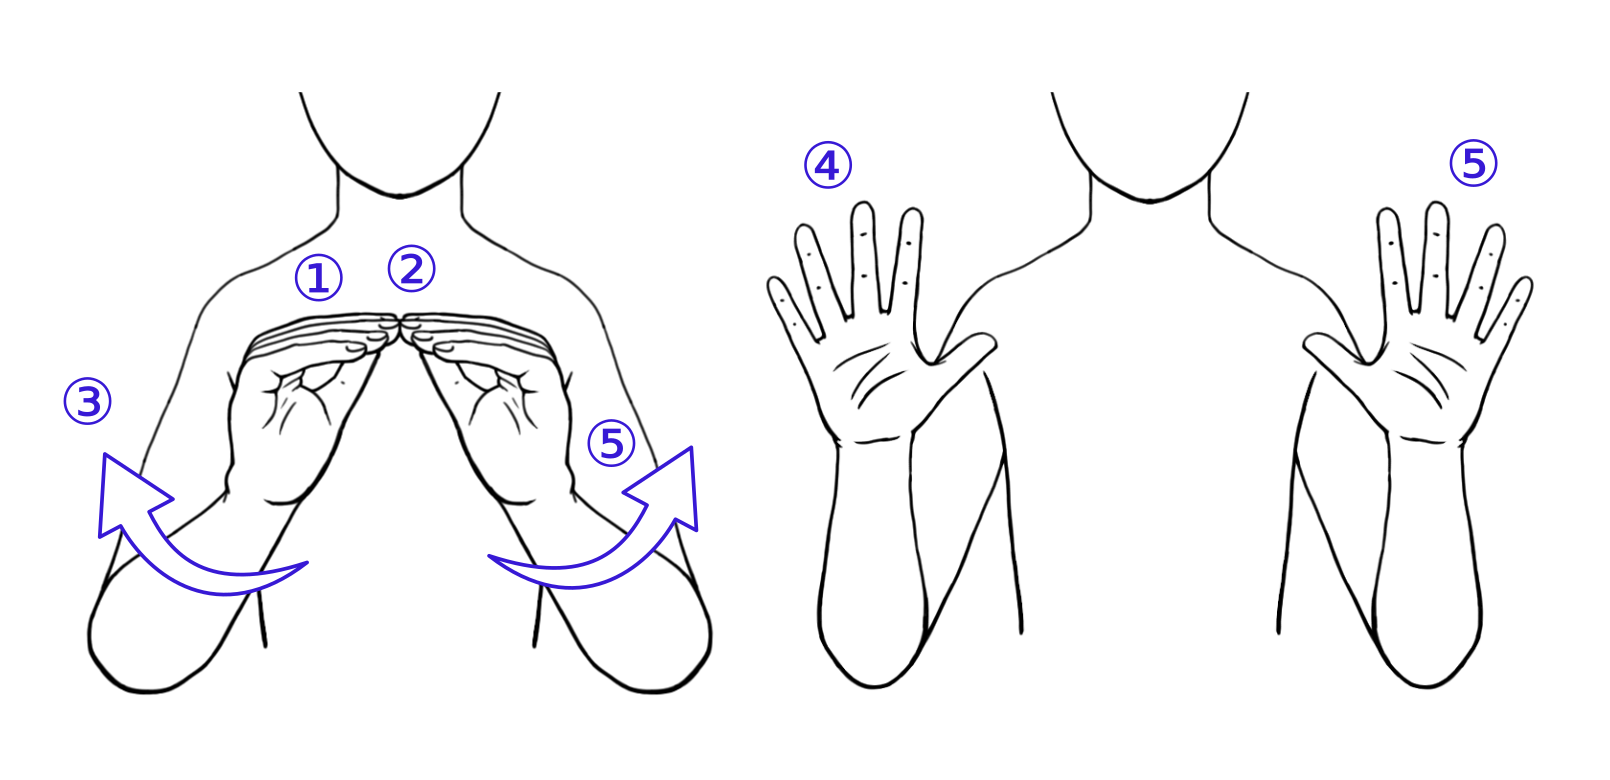 Ilustración del signo idiomático “No hacer nada”. La configuración (Q) inicial es de “pinza recta”, y la orientación (O) es contralateral. Estos son los rasgos “internos” de la mano, marcados con ①. El lugar (L) es neutro, centrado, y con contacto entre las manos ②. El signo incluye dinamicidad, capturada en ③, en la que las manos rotan sobre la muñeca y se desplazan ipsilateralmente. Además, la configuración también cambia, extendiéndose los dedos. El estado final de la mano (Q, O, y L de nuevo) se representa en ④. Finalmente, ⑤ nos llama la atención al hecho de que la mano no dominante realiza, de manera completamente simétrica, los mismos gestos articulatorios que la mano dominante. Este rasgo se suele recoger bajo la denominación de “bimanualidad”. Figura original de Lahoz-Bengoechea y Sevilla (2022b).